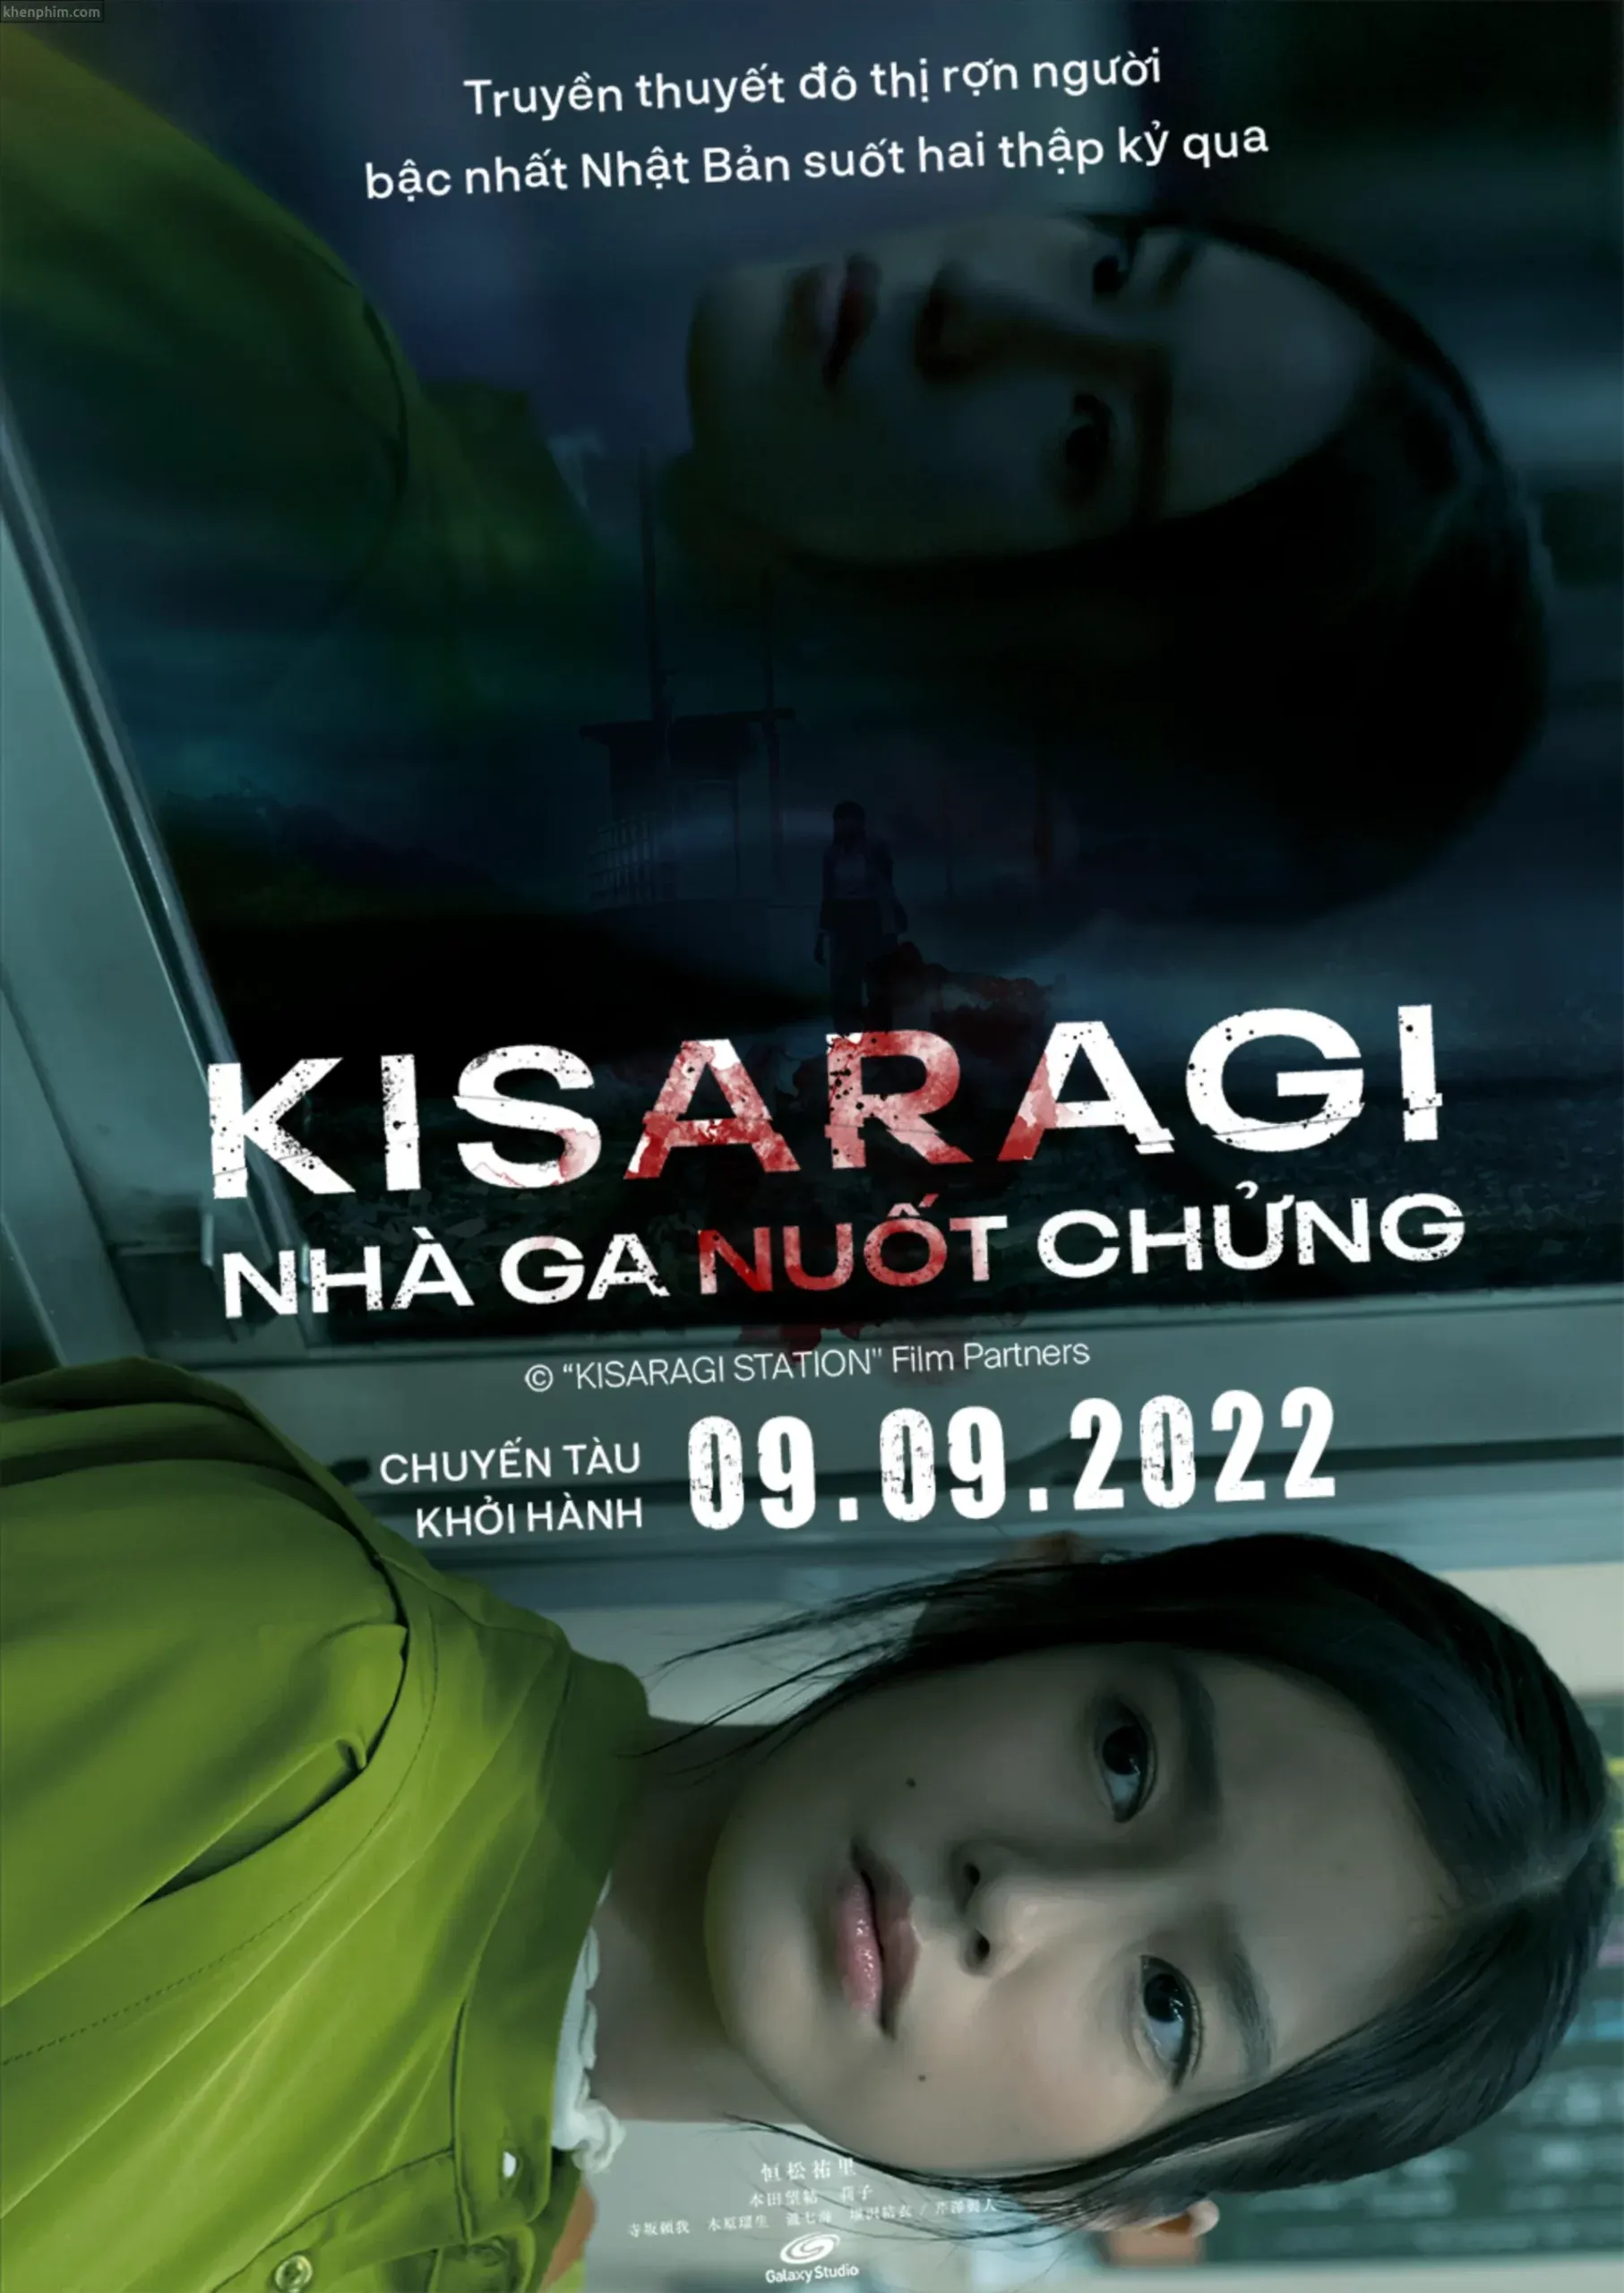 Review phim Kisaragi: Nhà Ga Nuốt Chửng: Ngắn gọn với một cái kết mở